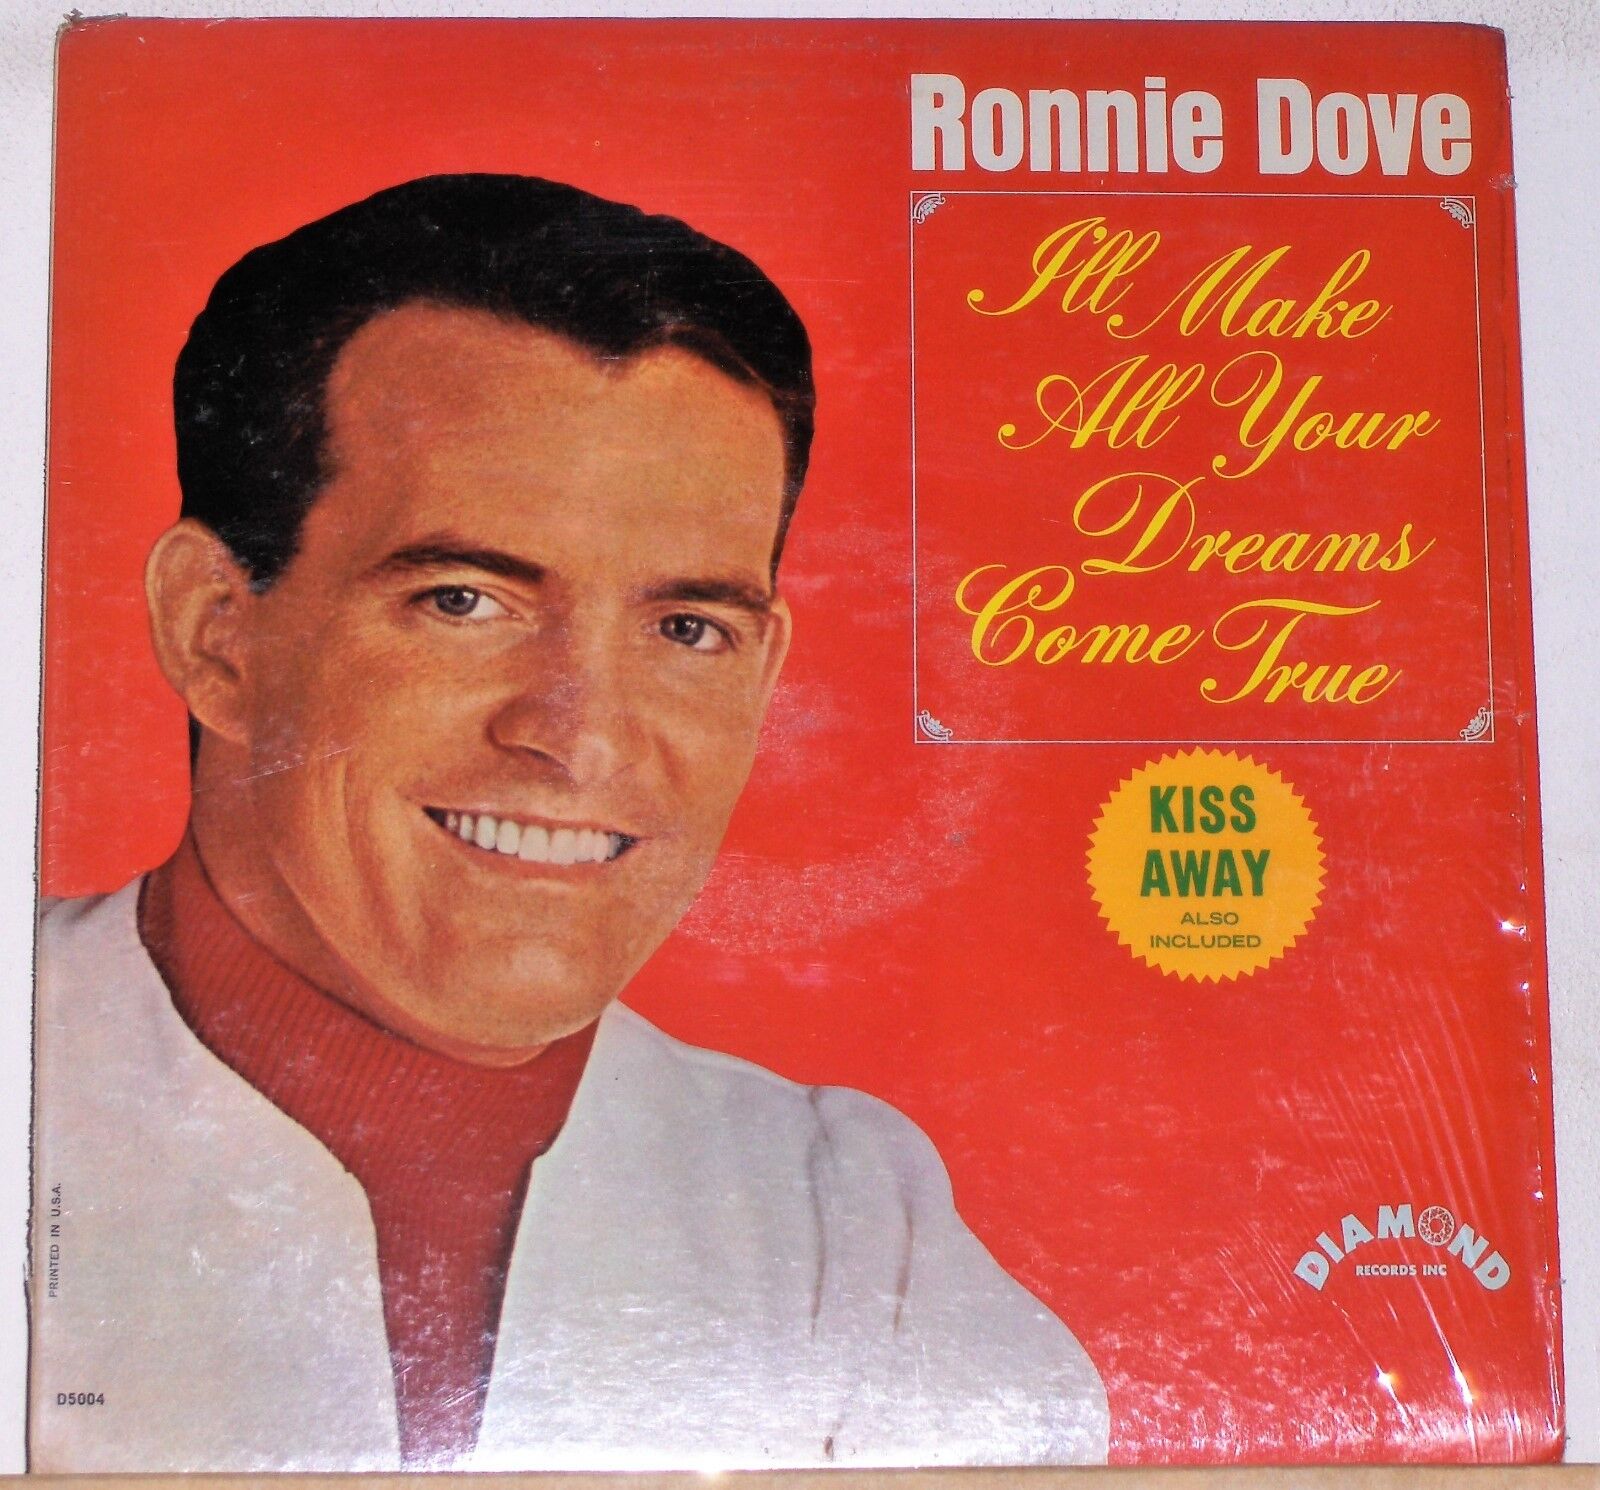 Ronnie Dove - I'll Make All Your Dreams Come True - LP Record Album - Excellent